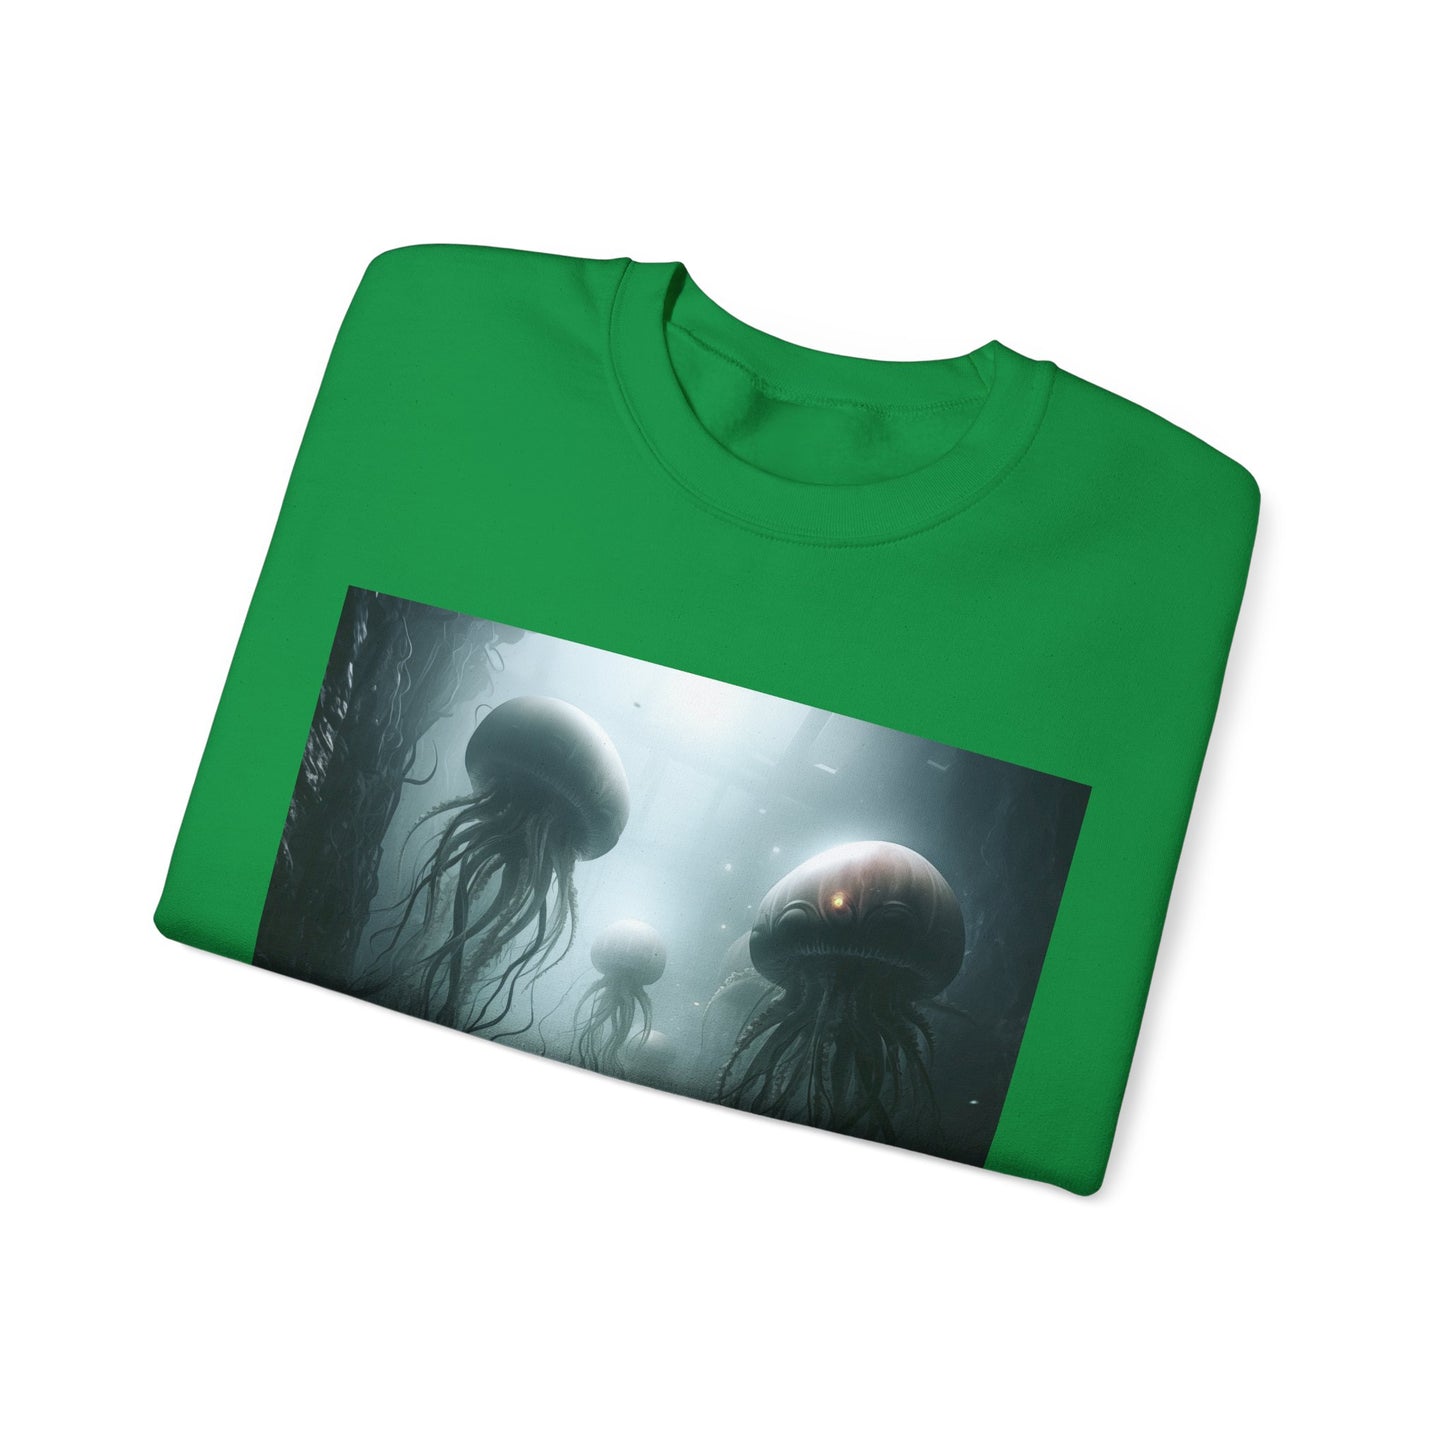 Alien Jellyfish Unisex Heavy Blend Crewneck Sweatshirt